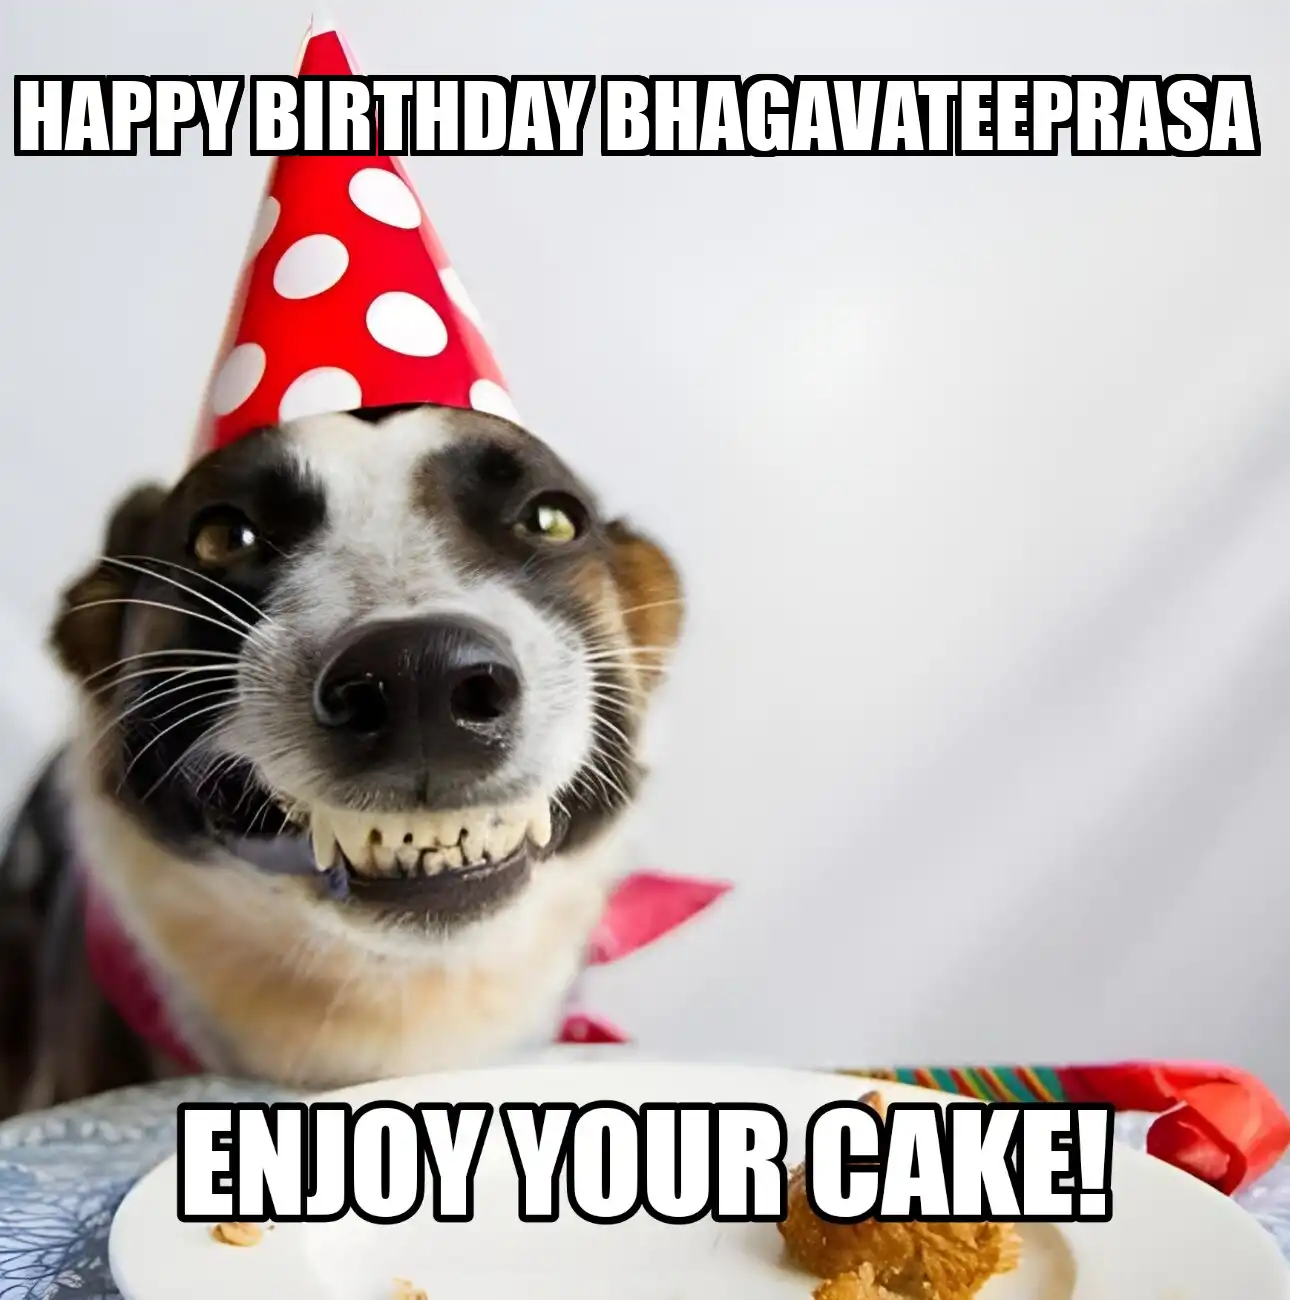 Happy Birthday Bhagavateeprasa Enjoy Your Cake Dog Meme